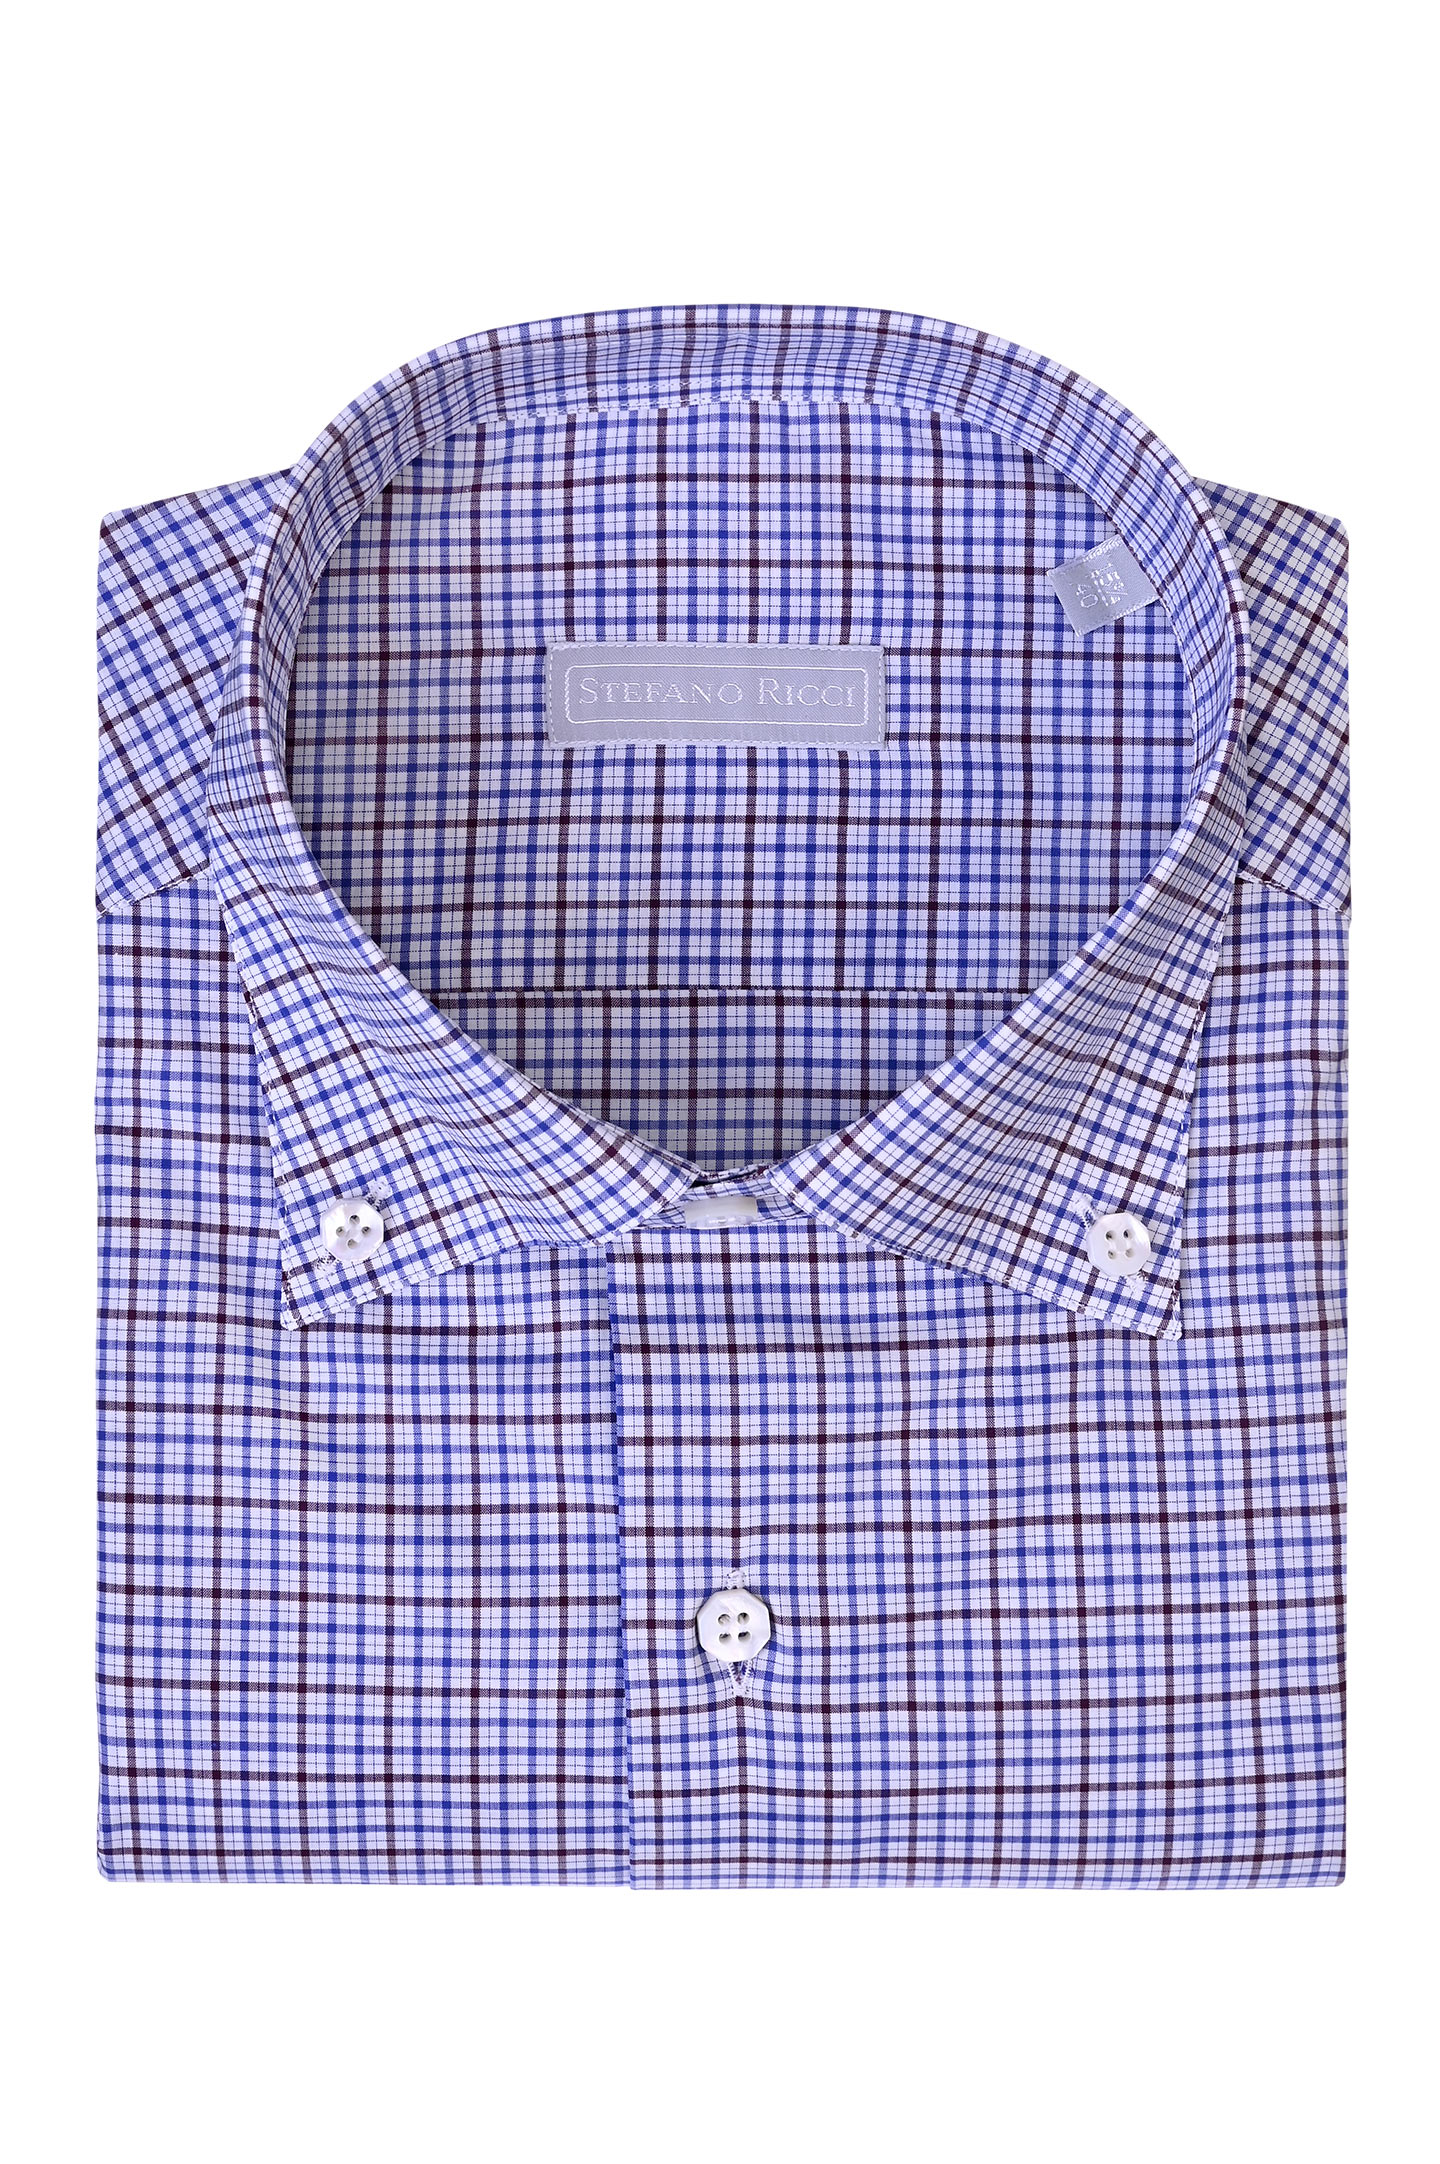 Рубашка STEFANO RICCI MC003700 L2212, цвет: Коричневый, Мужской